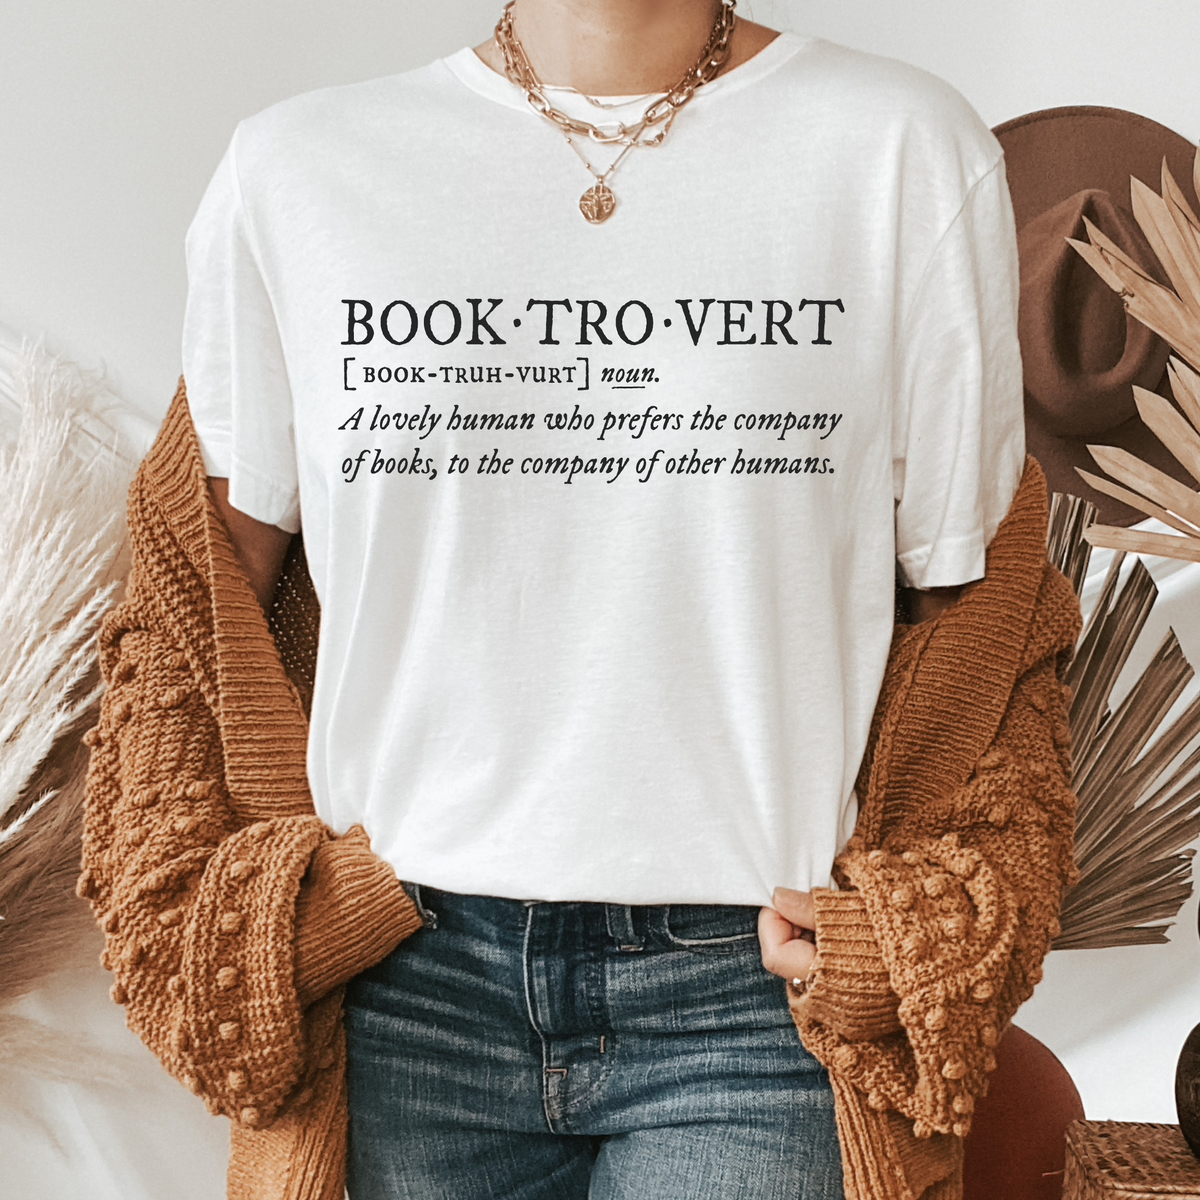 Booktrovert Shirt, Book shirt, book lovers gifts, gifts for book lovers,  gifts